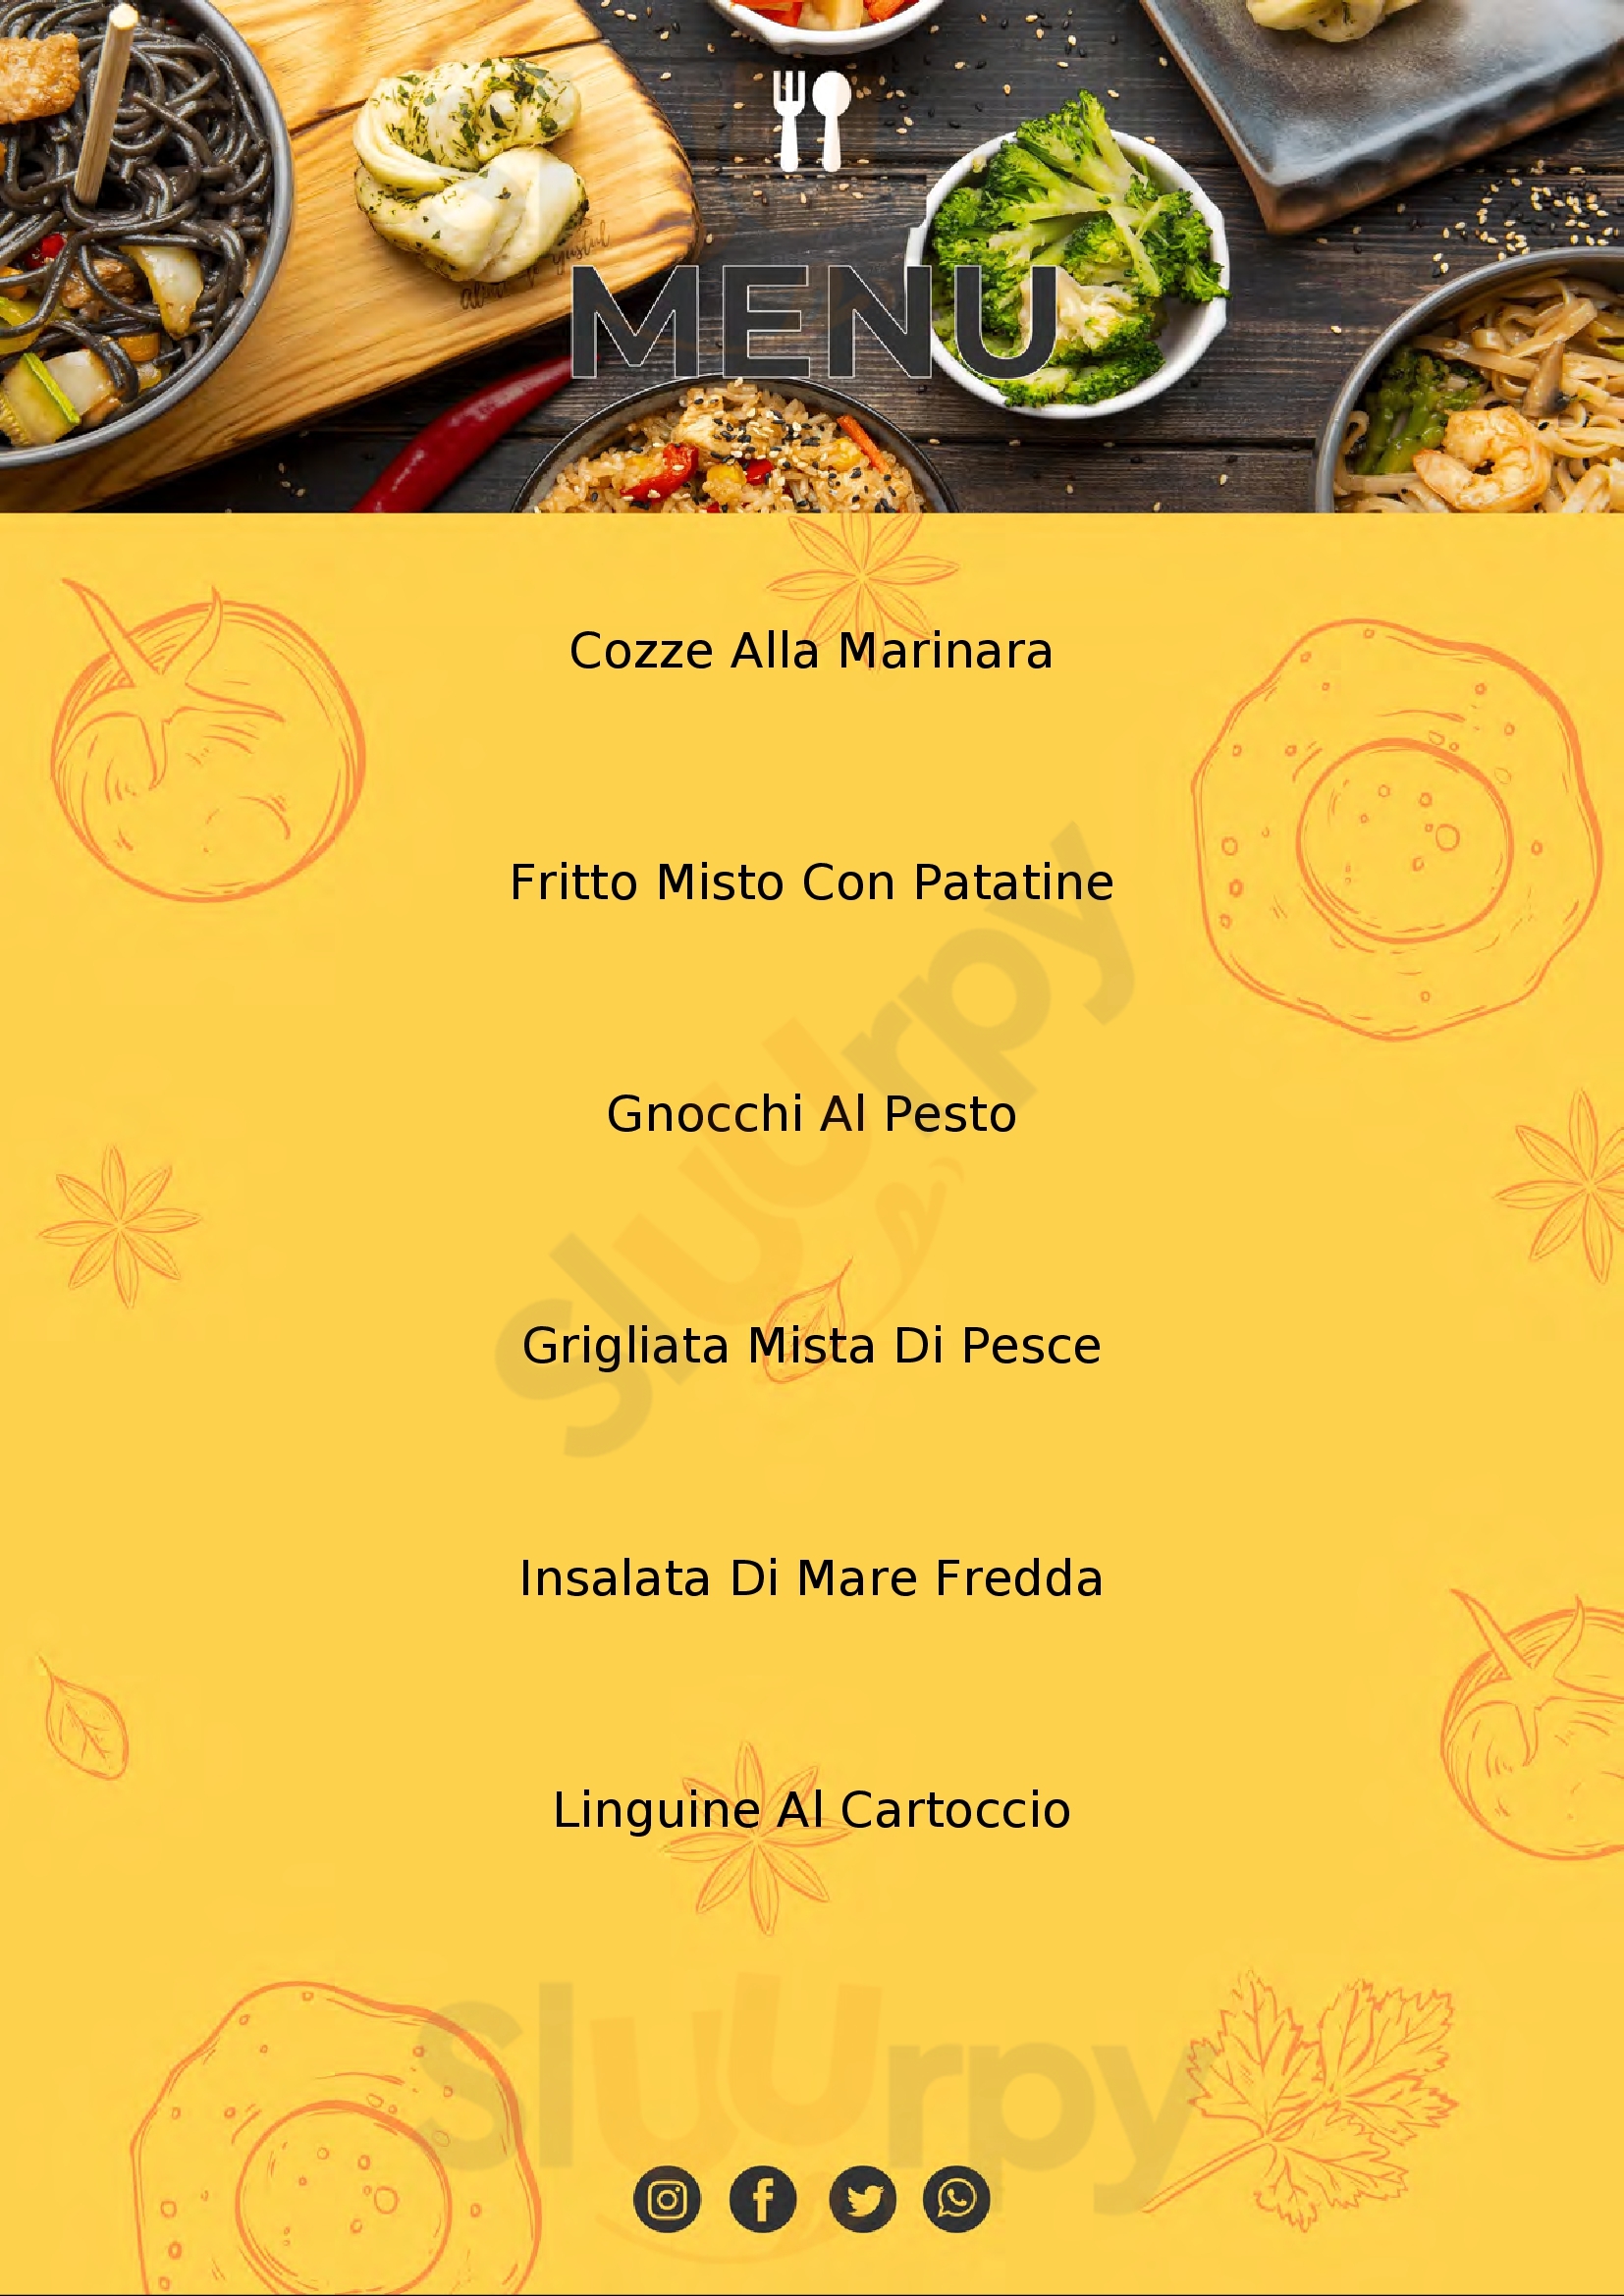 Osteria du Confogu Pietra Ligure menù 1 pagina